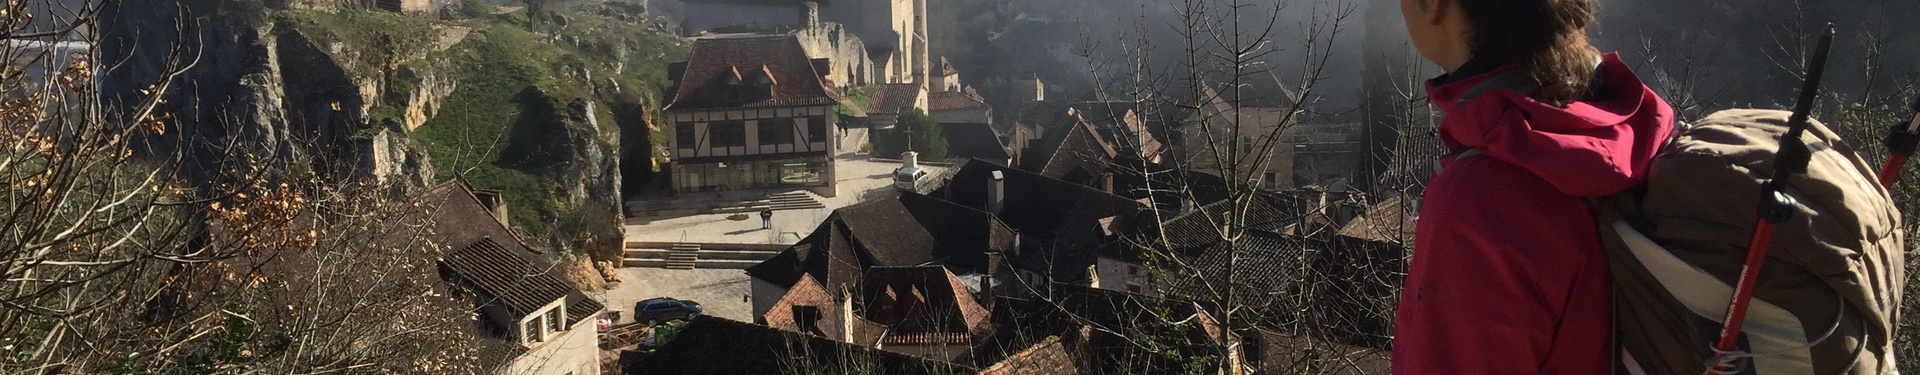 Randonnée liberté - 8 jours de Figeac à Cahors | Nuitées en hôtel